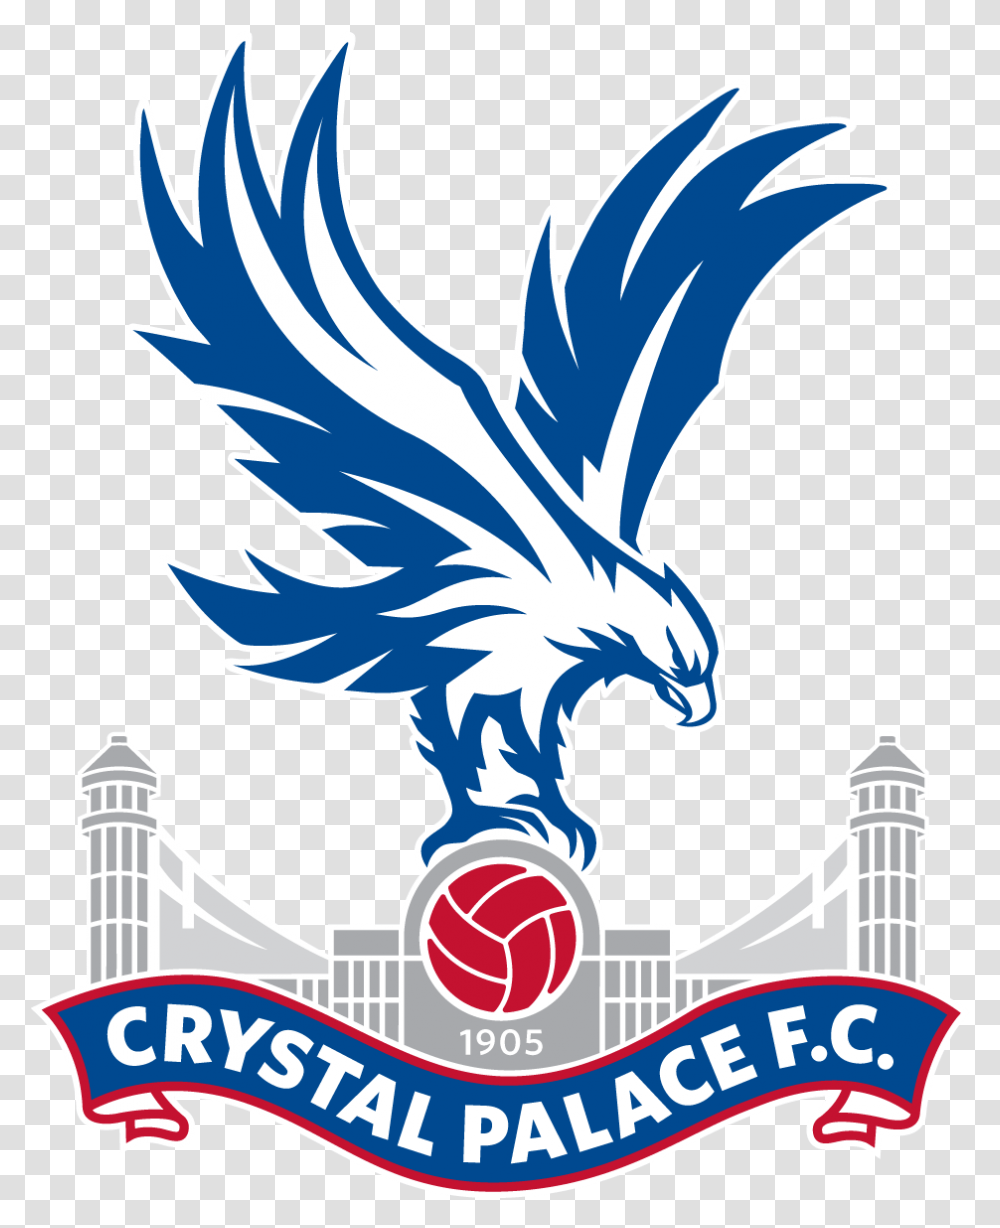 Crystal Palace Fc Logo Crystal Palace Logo, Emblem, Symbol, Eagle, Bird Transparent Png